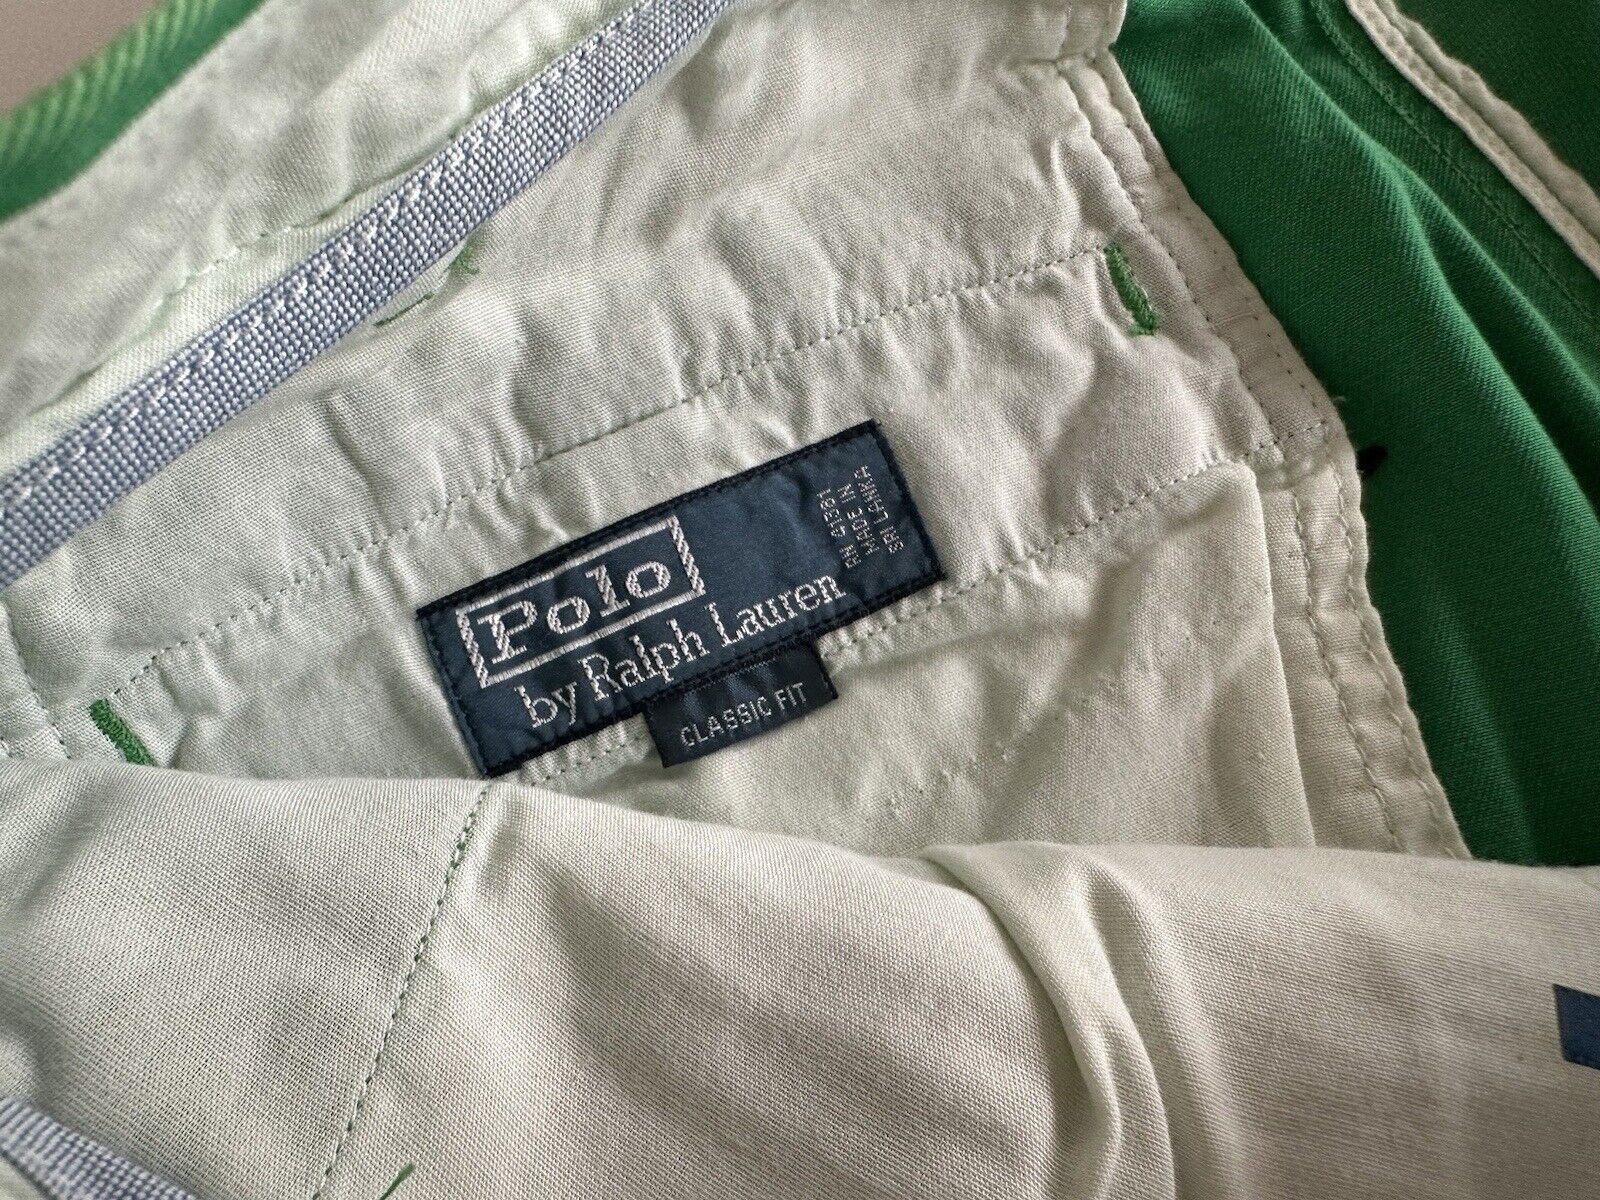 Polo Ralph Lauren Herren-Shorts mit klassischer Passform, grün, Größe 33 US 